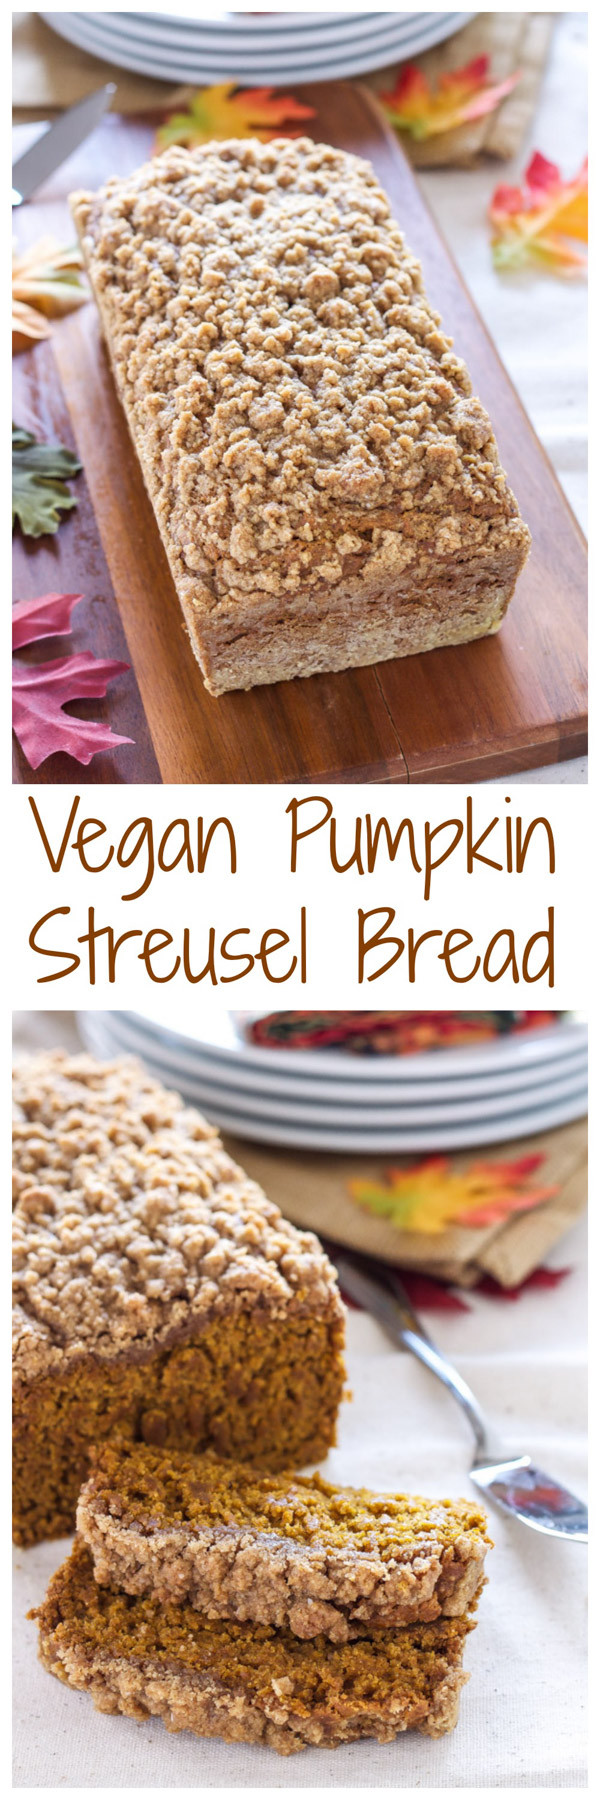 Vegan Pumpkin Bread Recipes
 Vegan Pumpkin Streusel Bread Recipe Runner